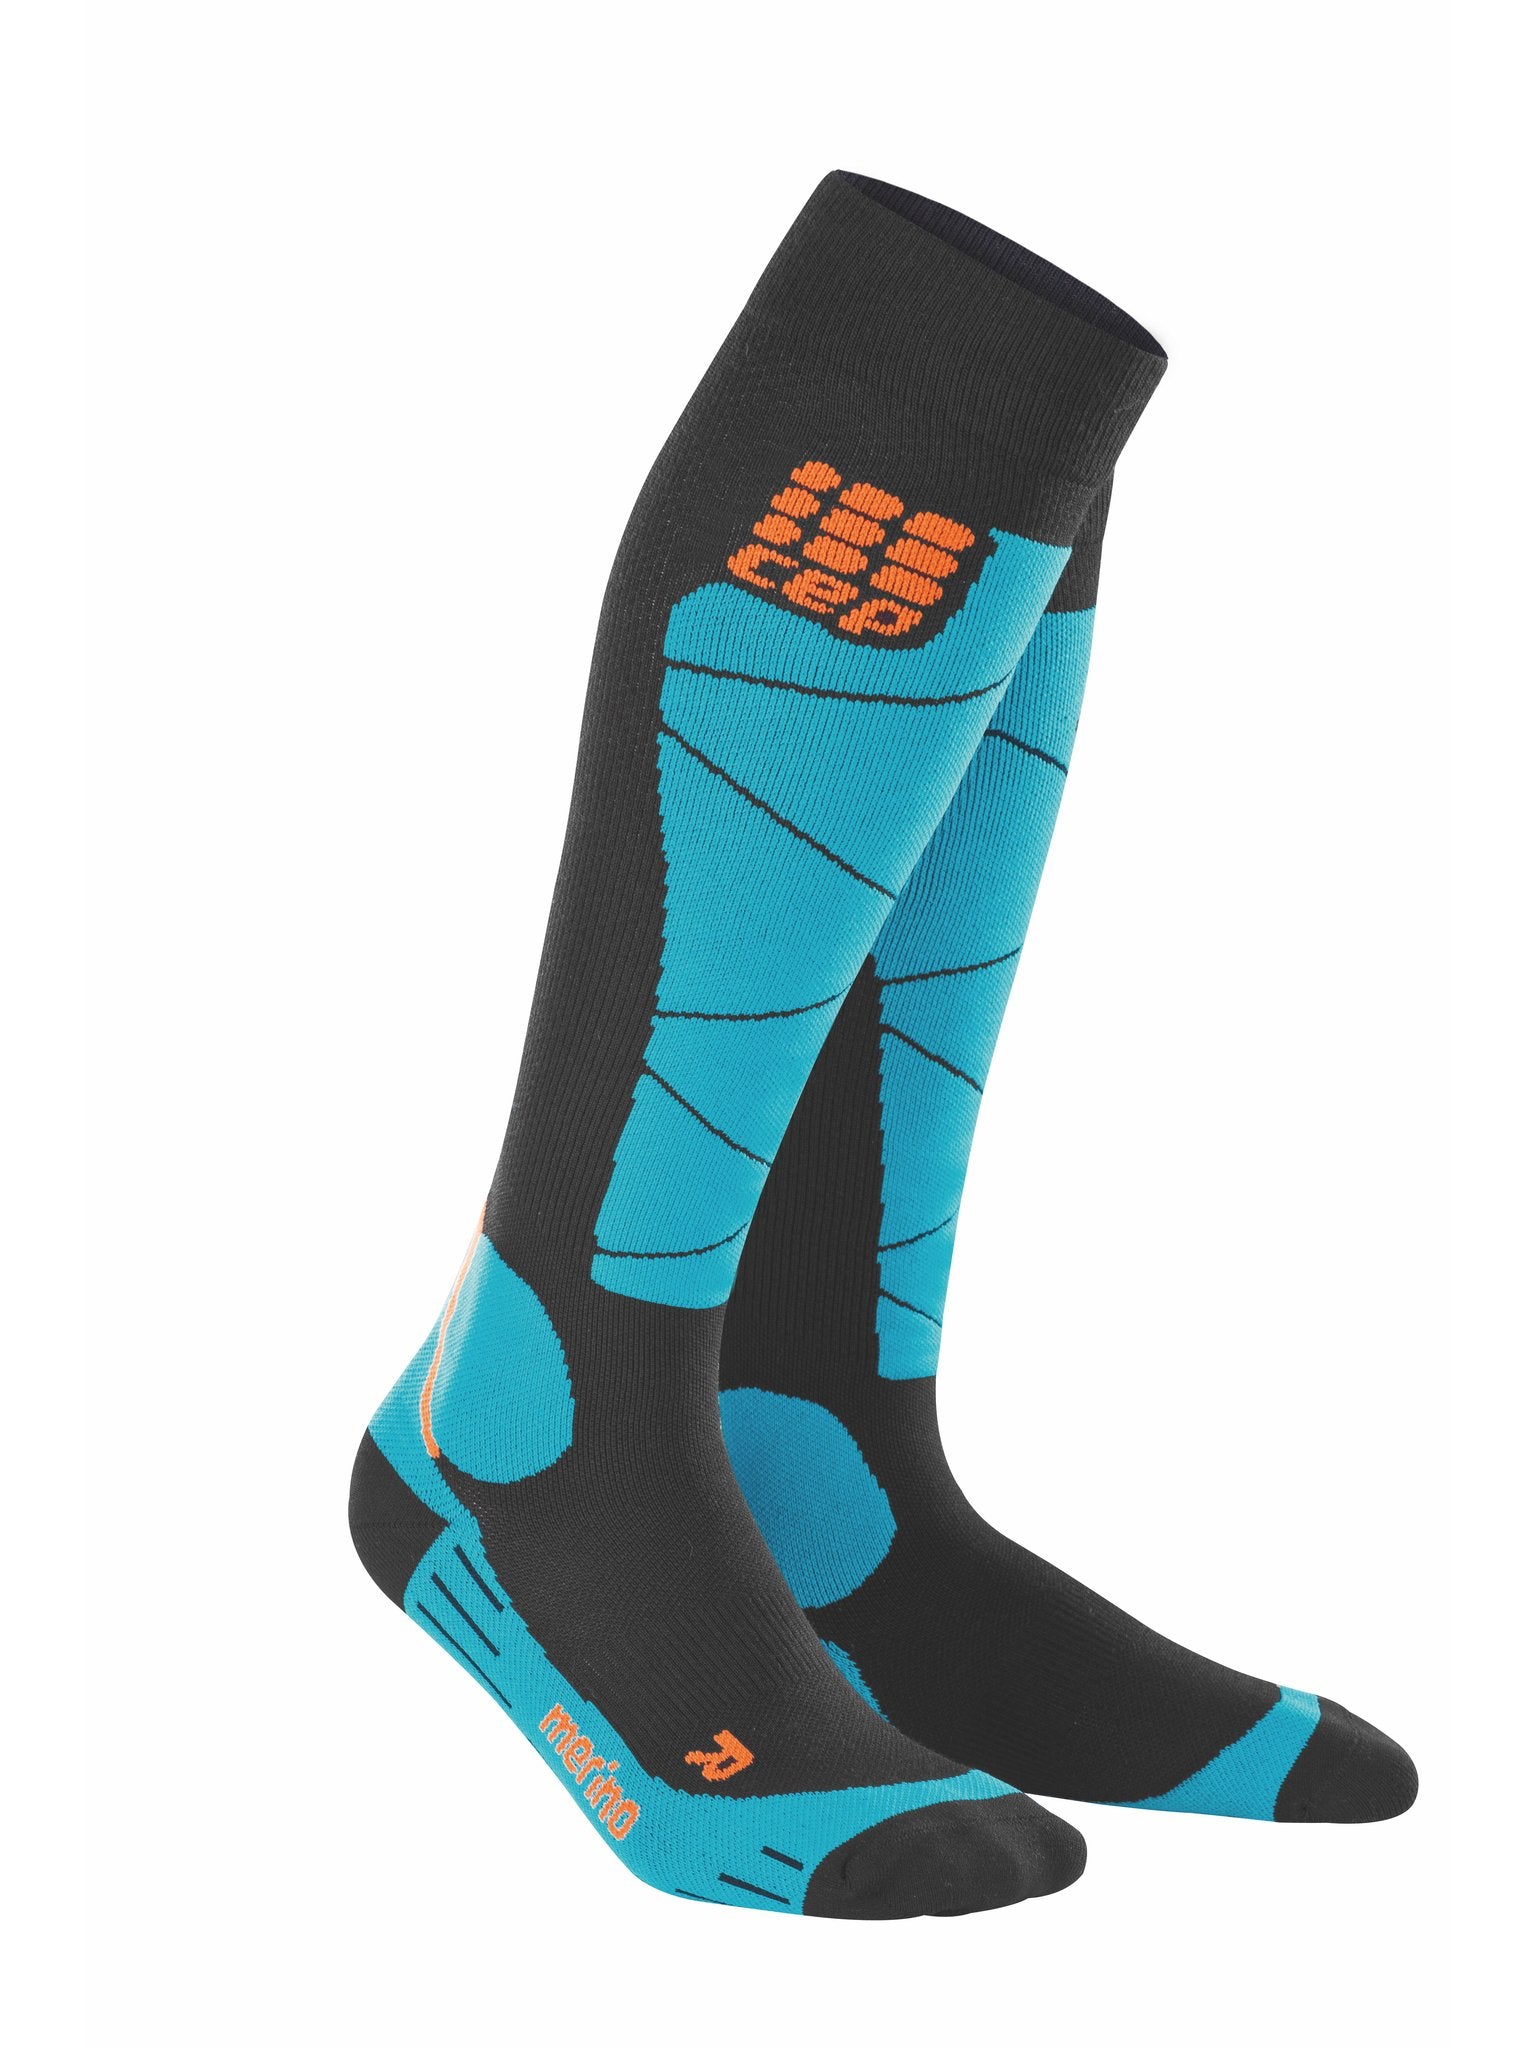 Ski Merino Socks, Men